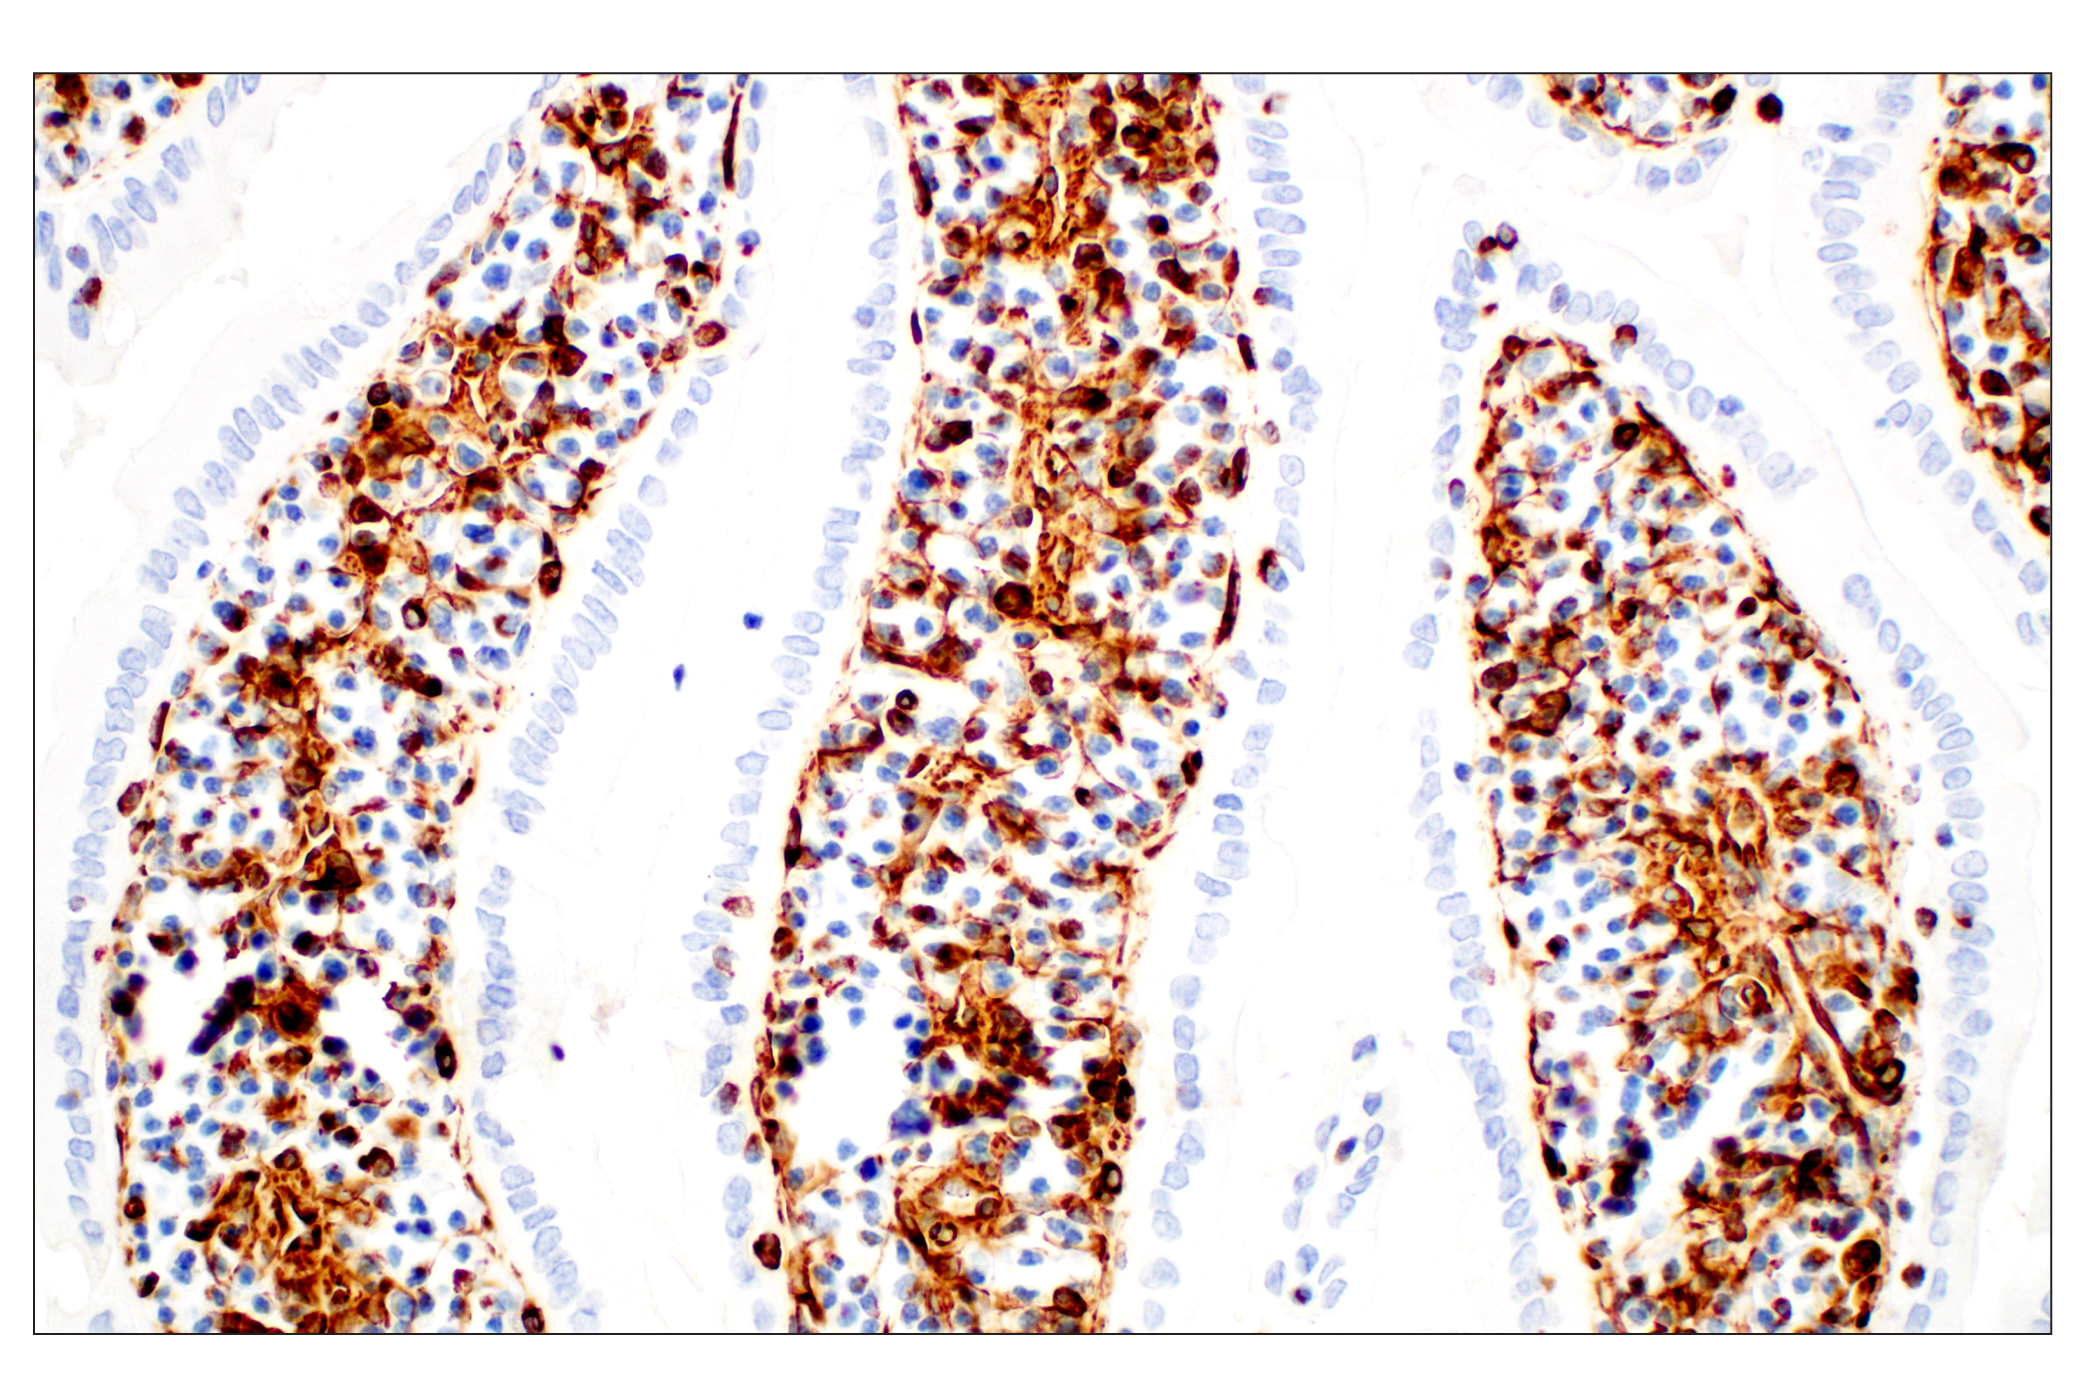  Image 44: Cell Fractionation Antibody Sampler Kit